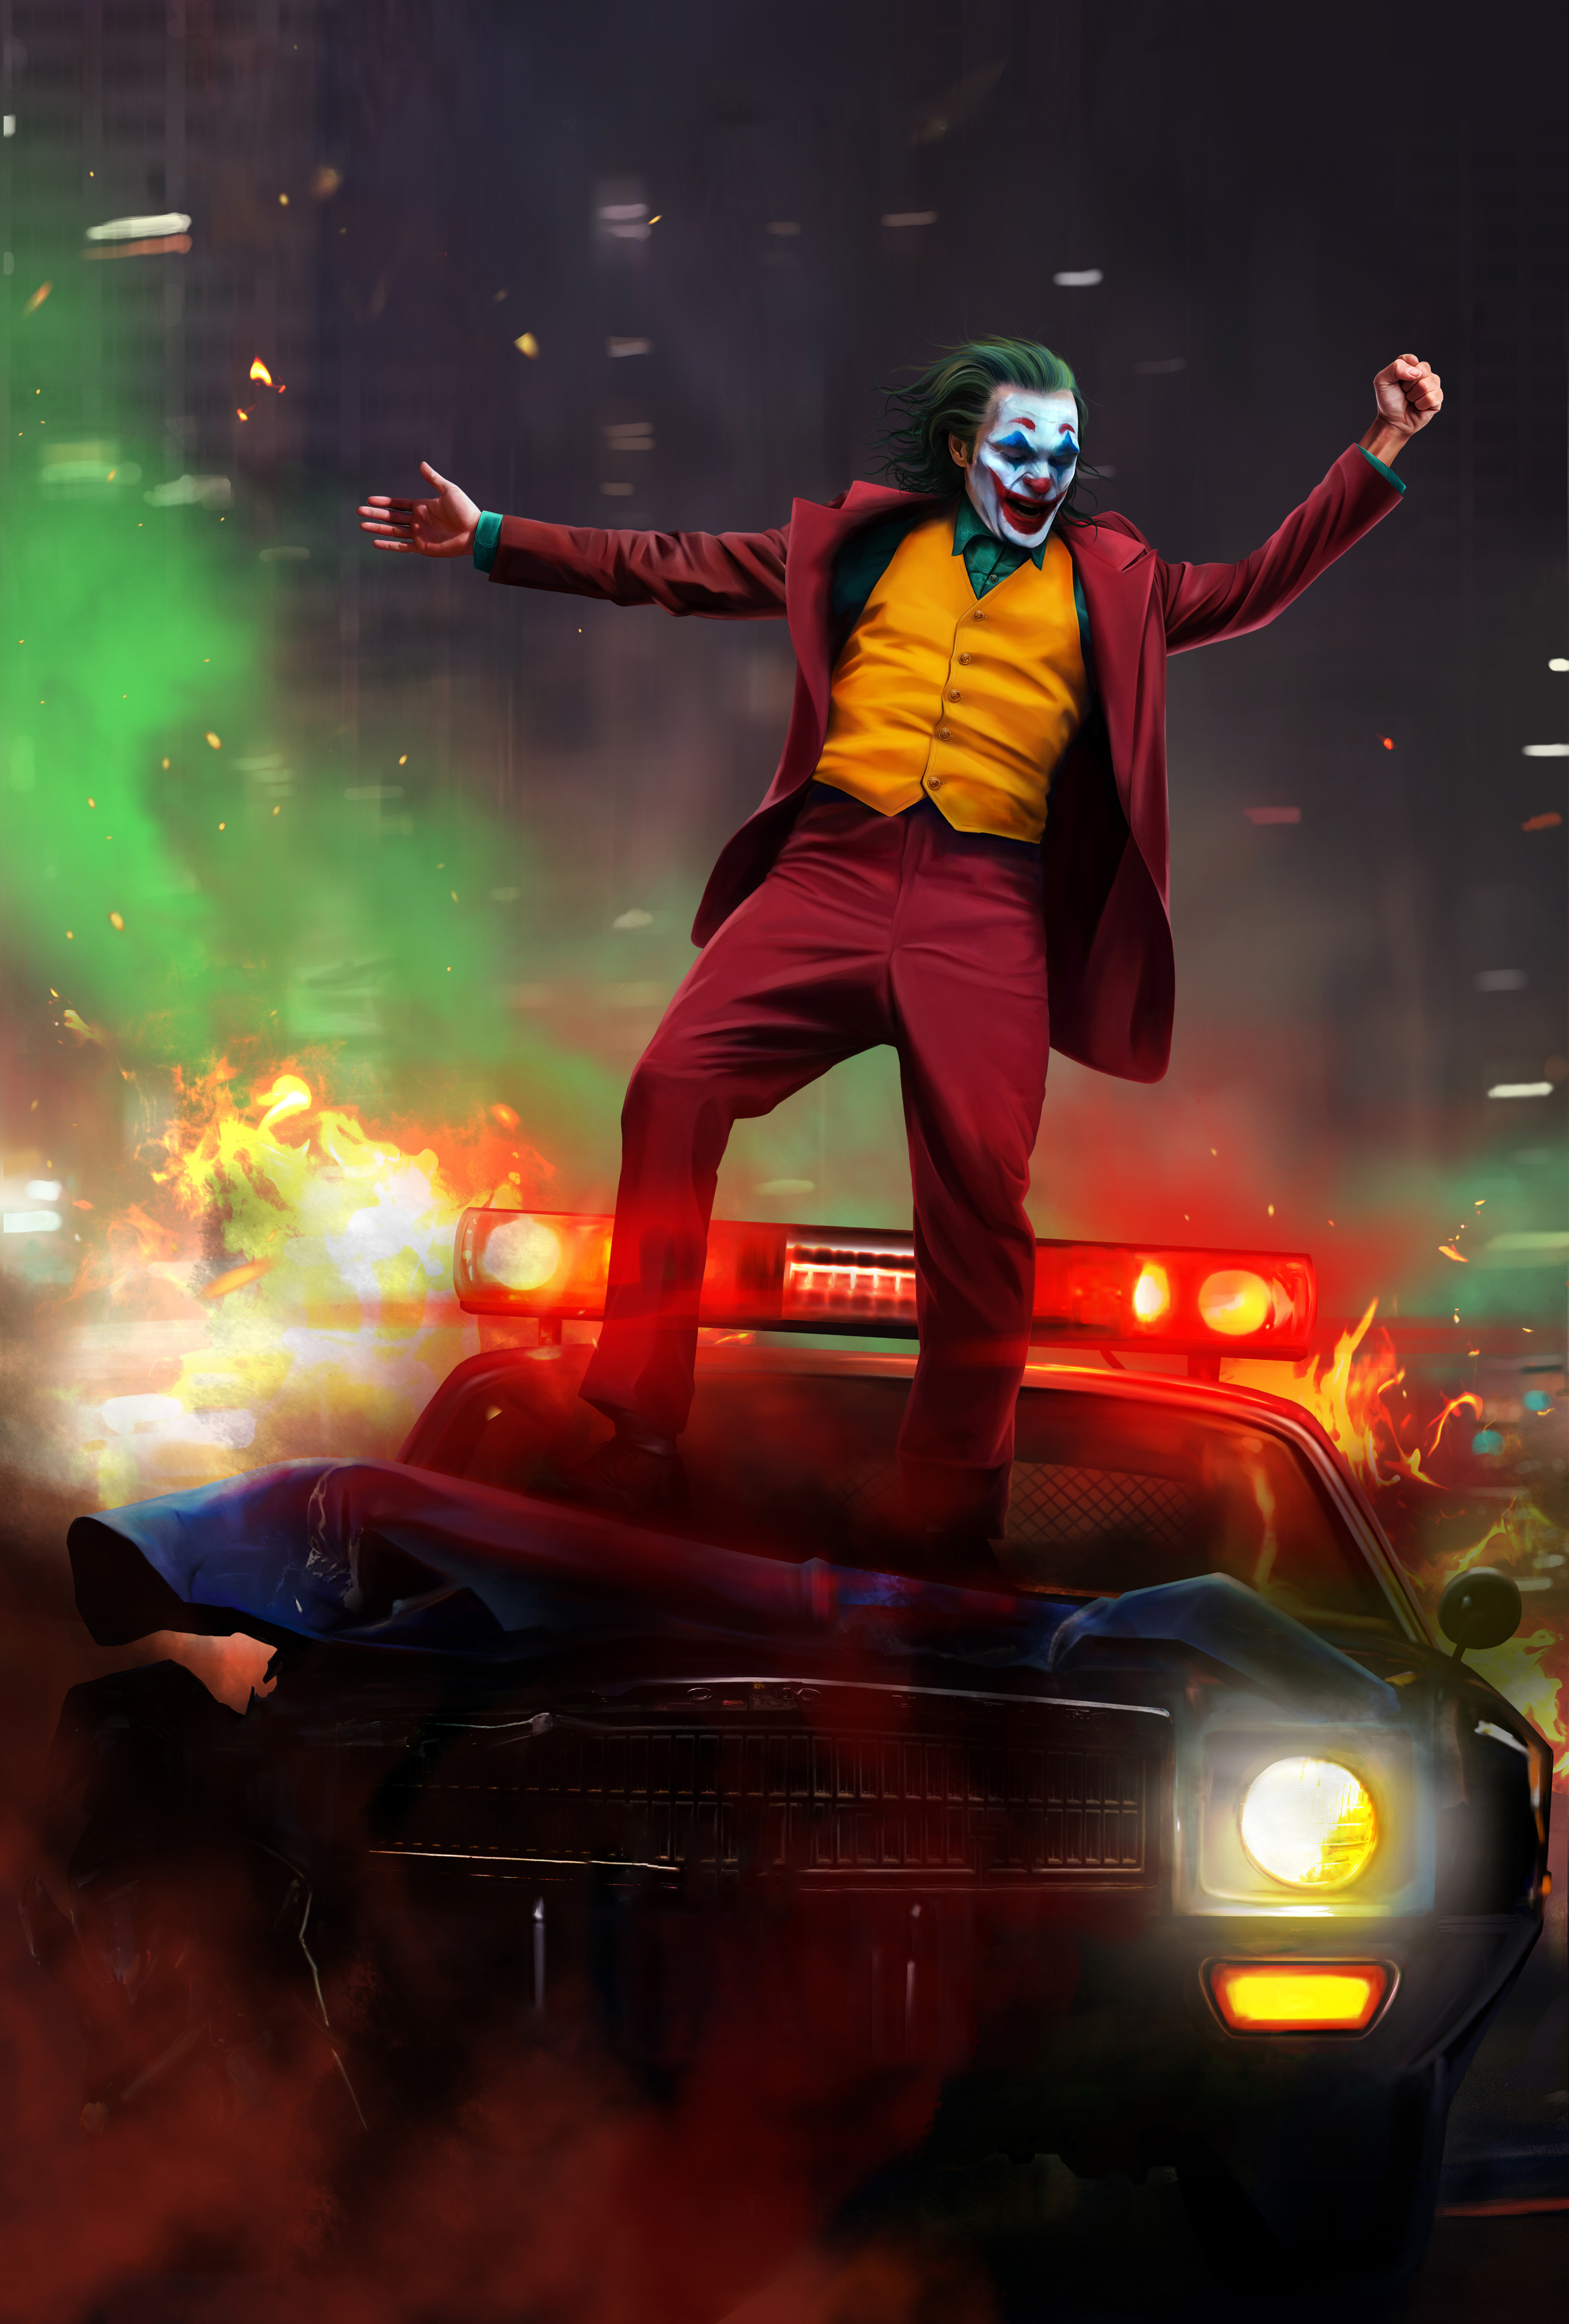 Joker 2019 Artwork 66971 3713x5500 